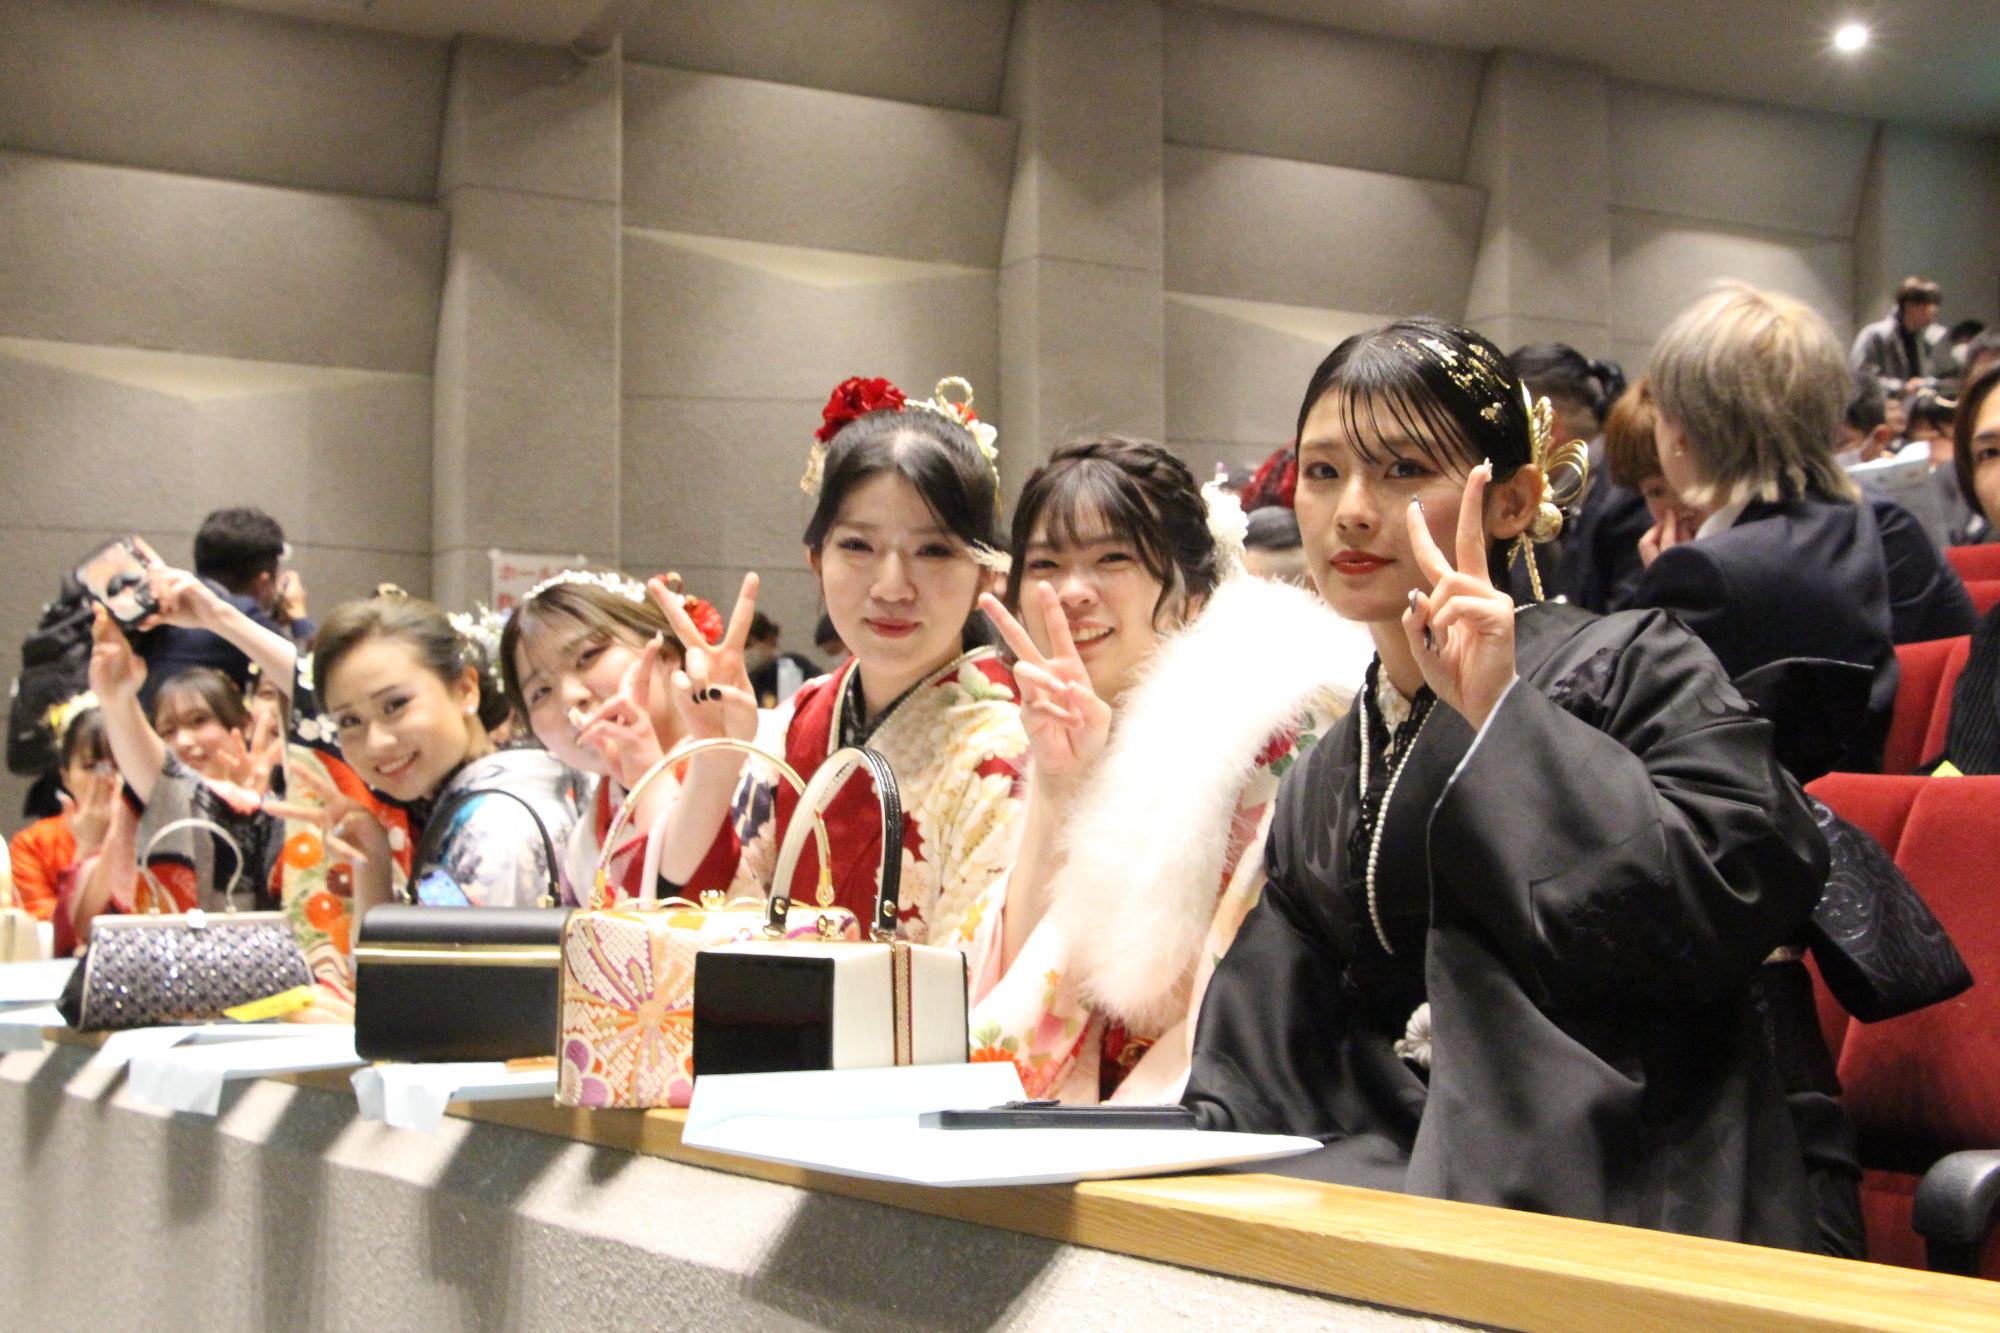 山崎文化会館館内でピースをして記念撮影に応じる若者らの写真